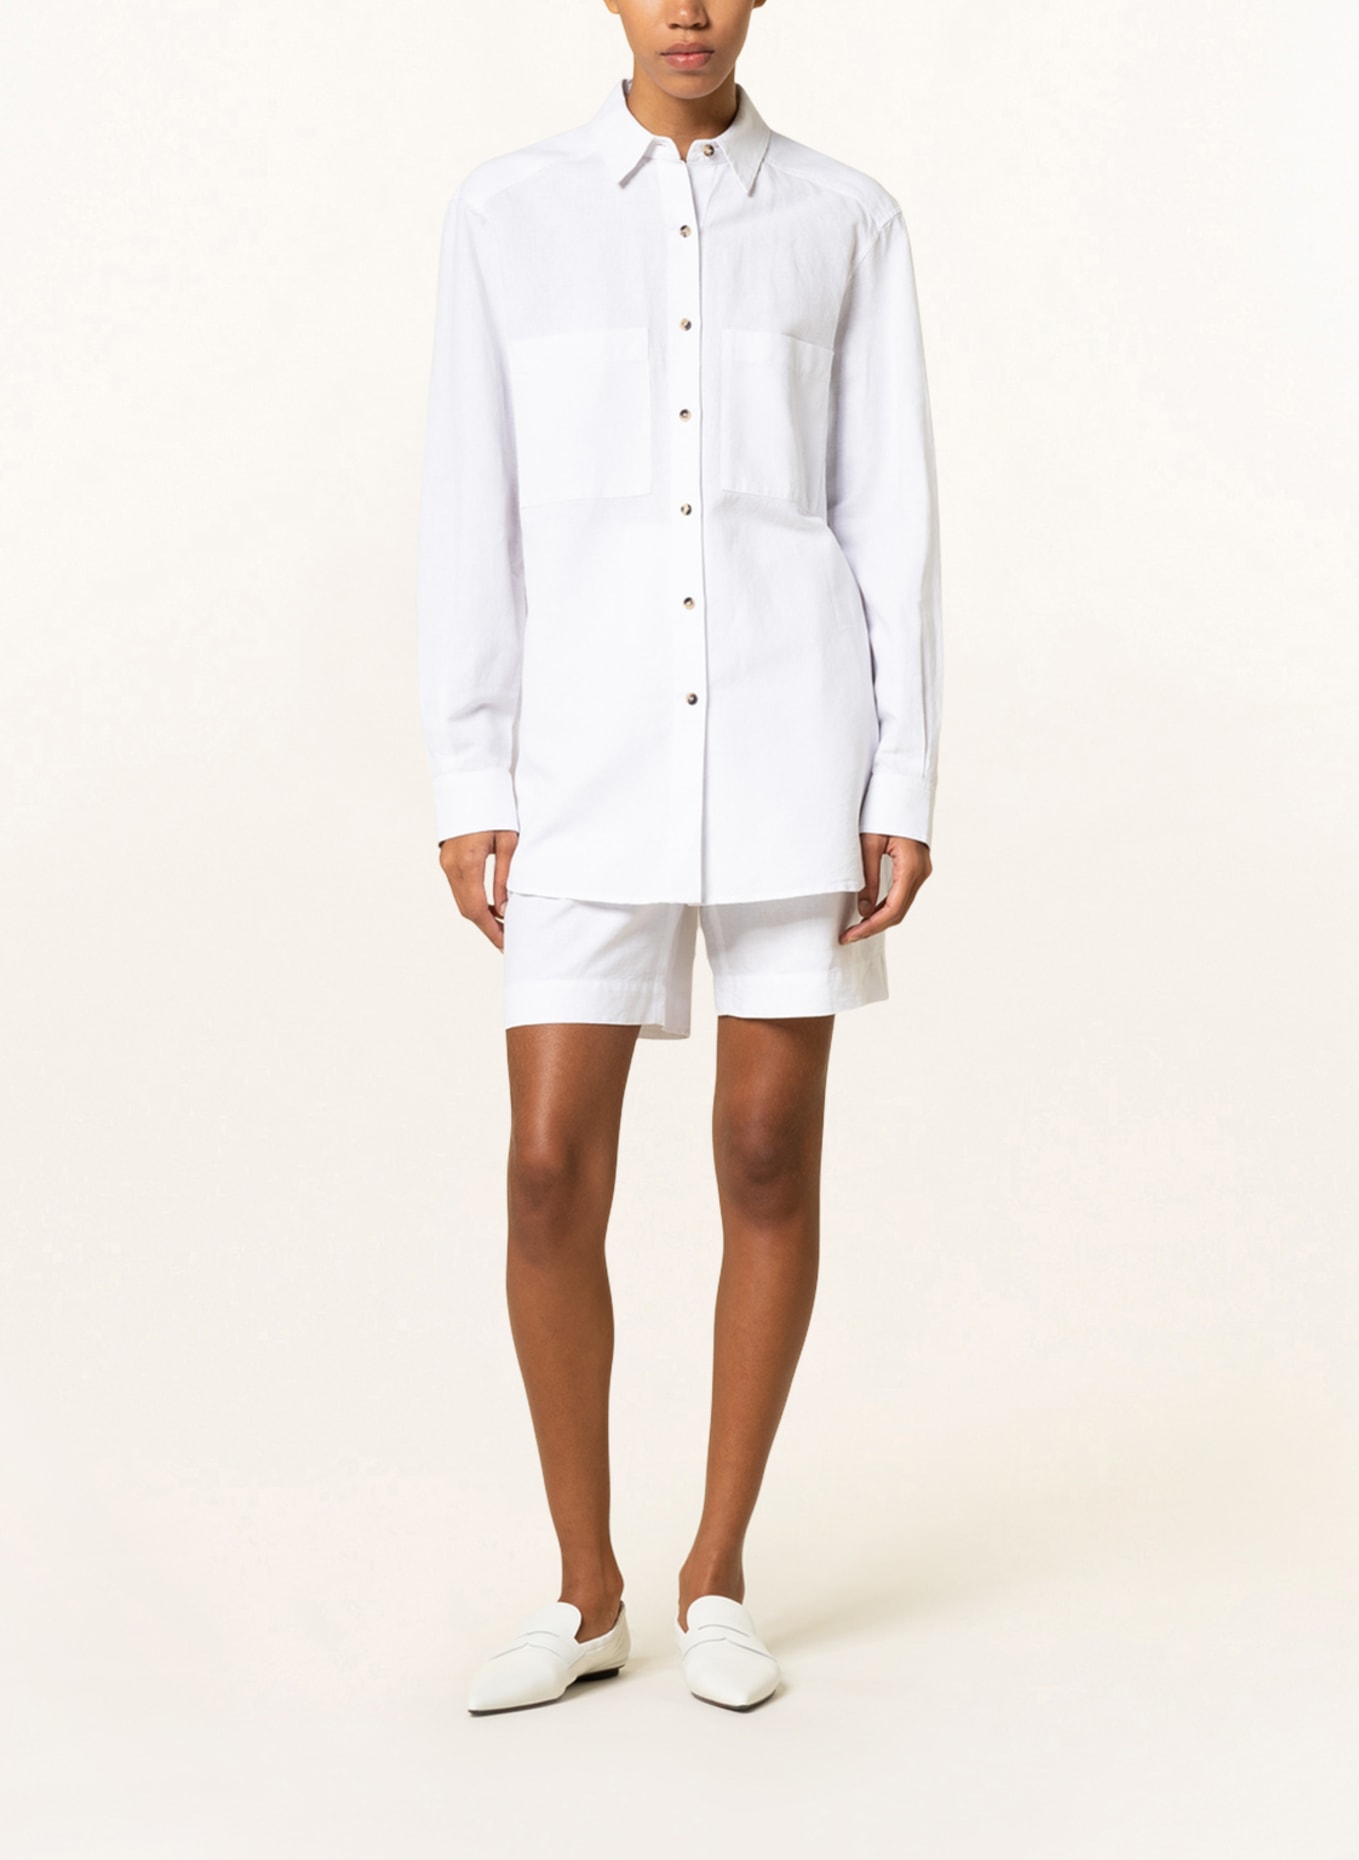 IRIS von ARNIM Shirt blouse BRITTA with linen, Color: WHITE (Image 2)